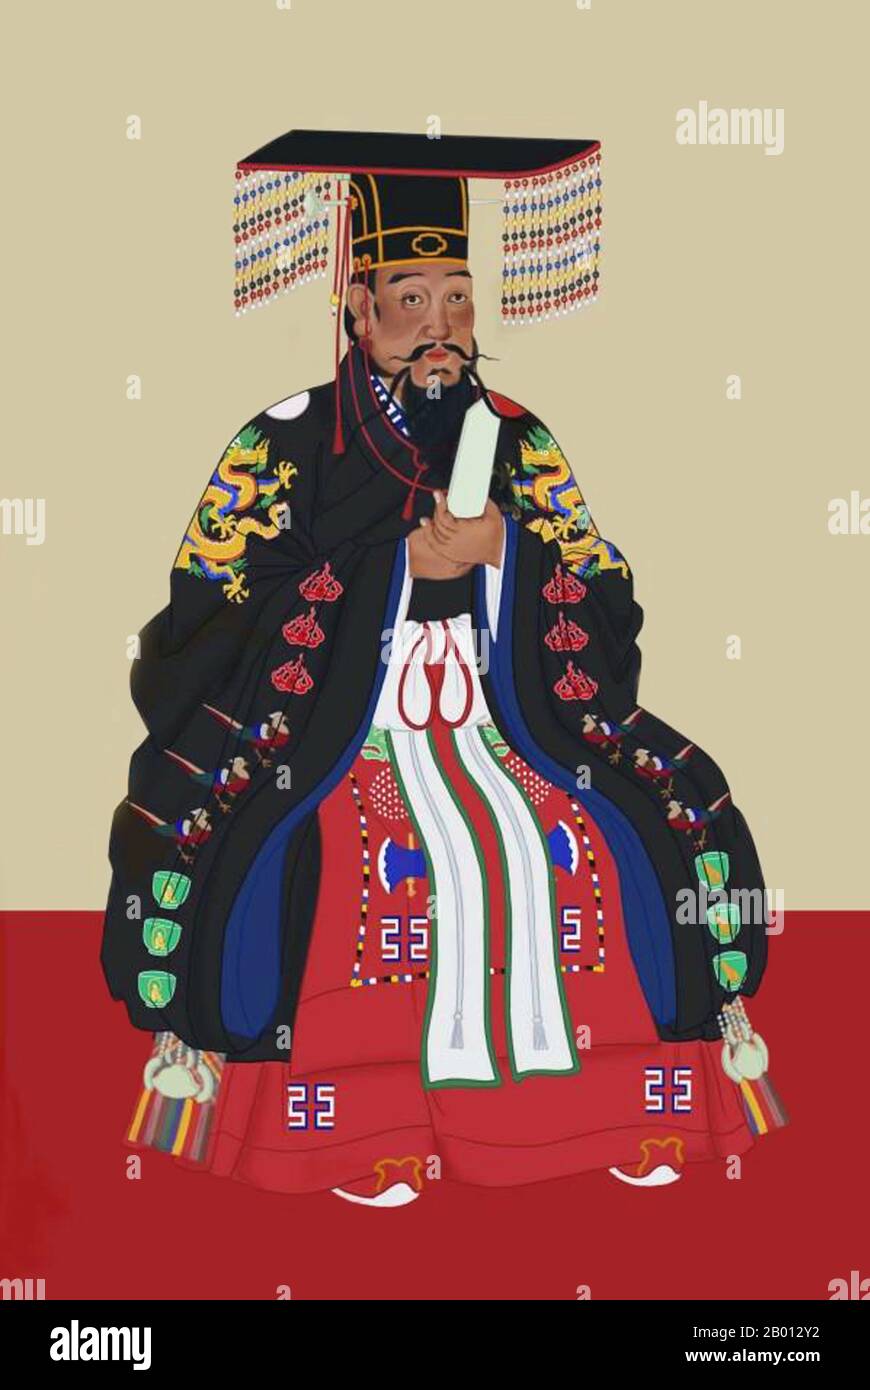 Cina: Imperatore YDongle, 3 ° sovrano della dinastia Ming (r. 1402-1424). Pittura a chiocciola sospesa, XV-XVII secolo. L'imperatore Yongle (1360-1424), nome personale Zhu di e nome del tempio Chengzu, fu il terzo imperatore della dinastia Ming. Il suo nome cinese YDongle significa 'felicità perpetua'. Divenne imperatore cospirando di usurpare il trono dal nipote, l'imperatore Jianwen. Trasferì la capitale da Nanjing a Pechino, dove si trovava nelle generazioni successive, e vi costruì la Città Proibita. Foto Stock